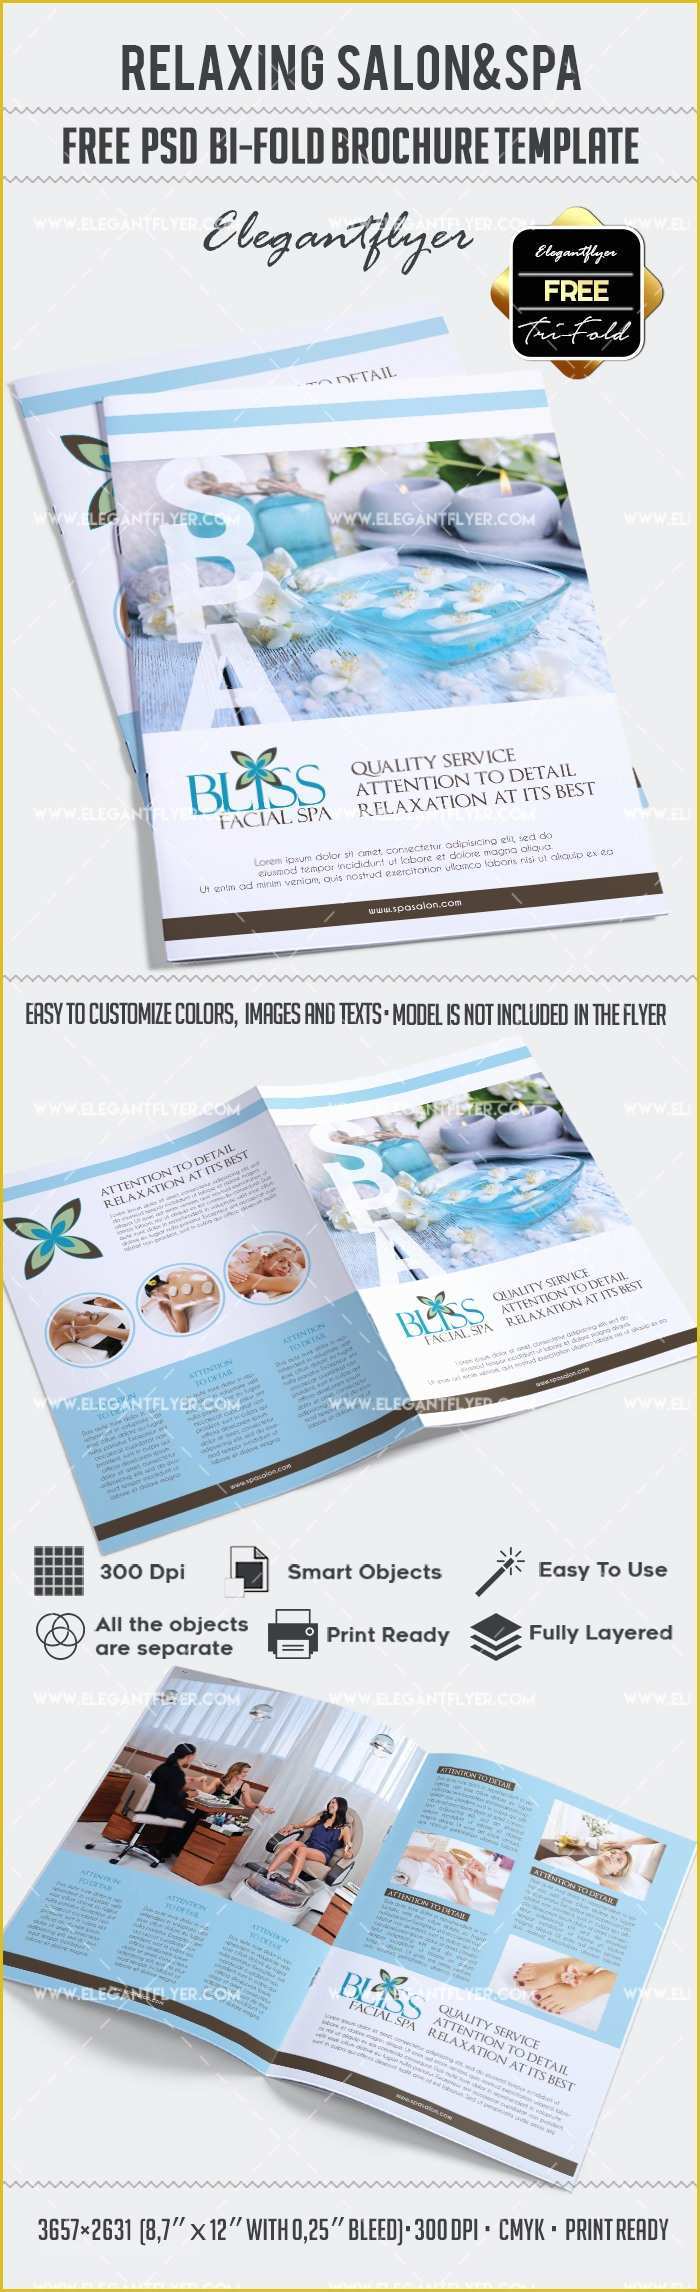 Free Flyer Brochure Templates Of Free Relaxing Salon for Bi Fold Psd Brochure – by Elegantflyer